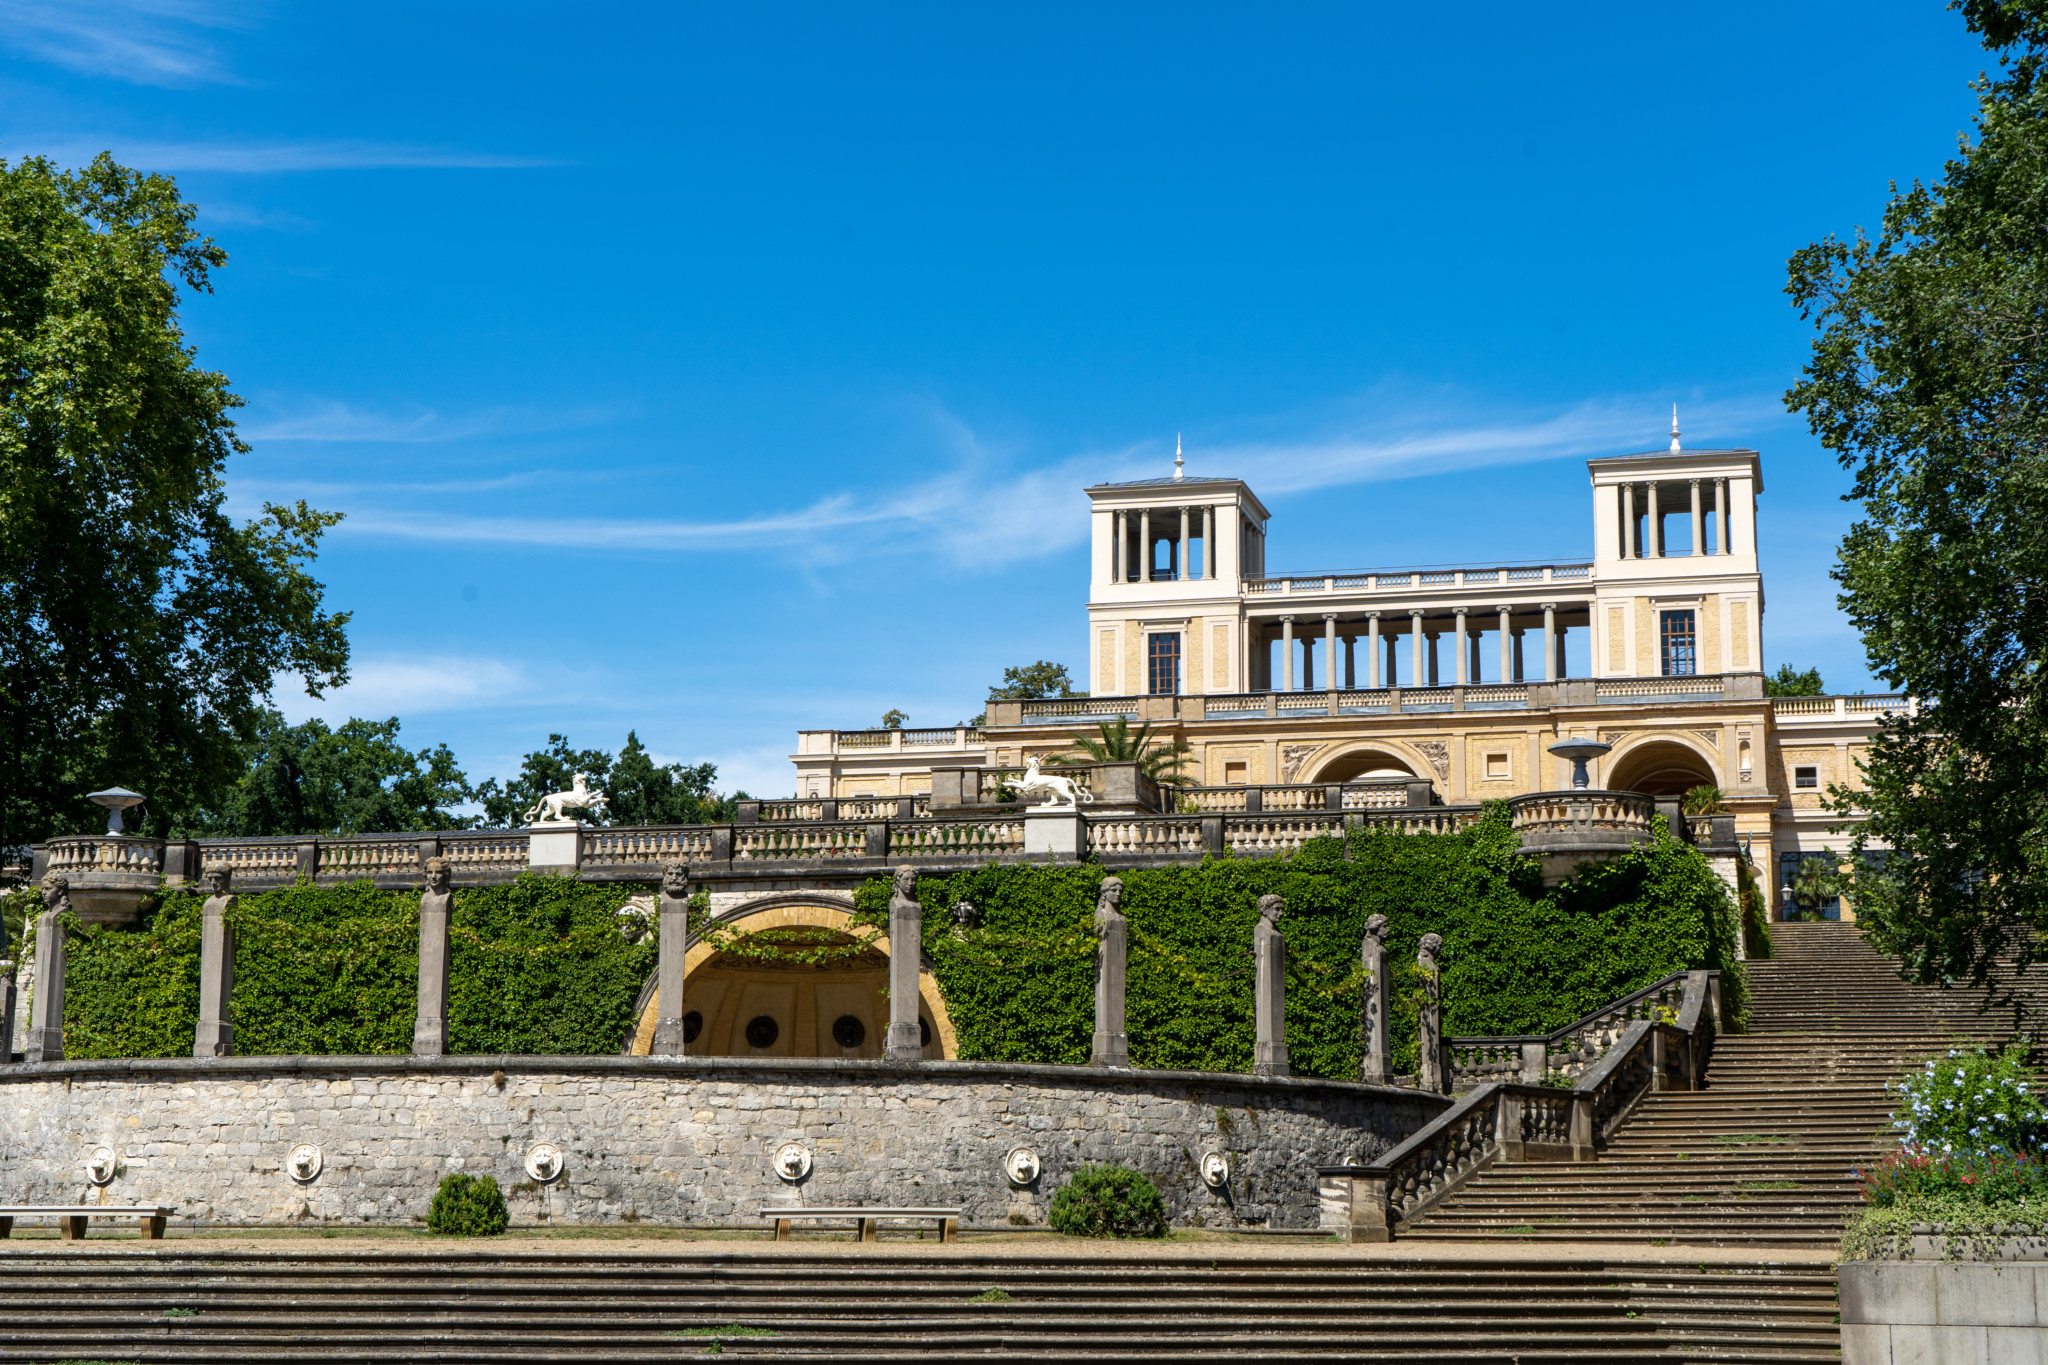 Das schicke Orangerieschloss steht unweit vom Schloss Sanssouci entfernt